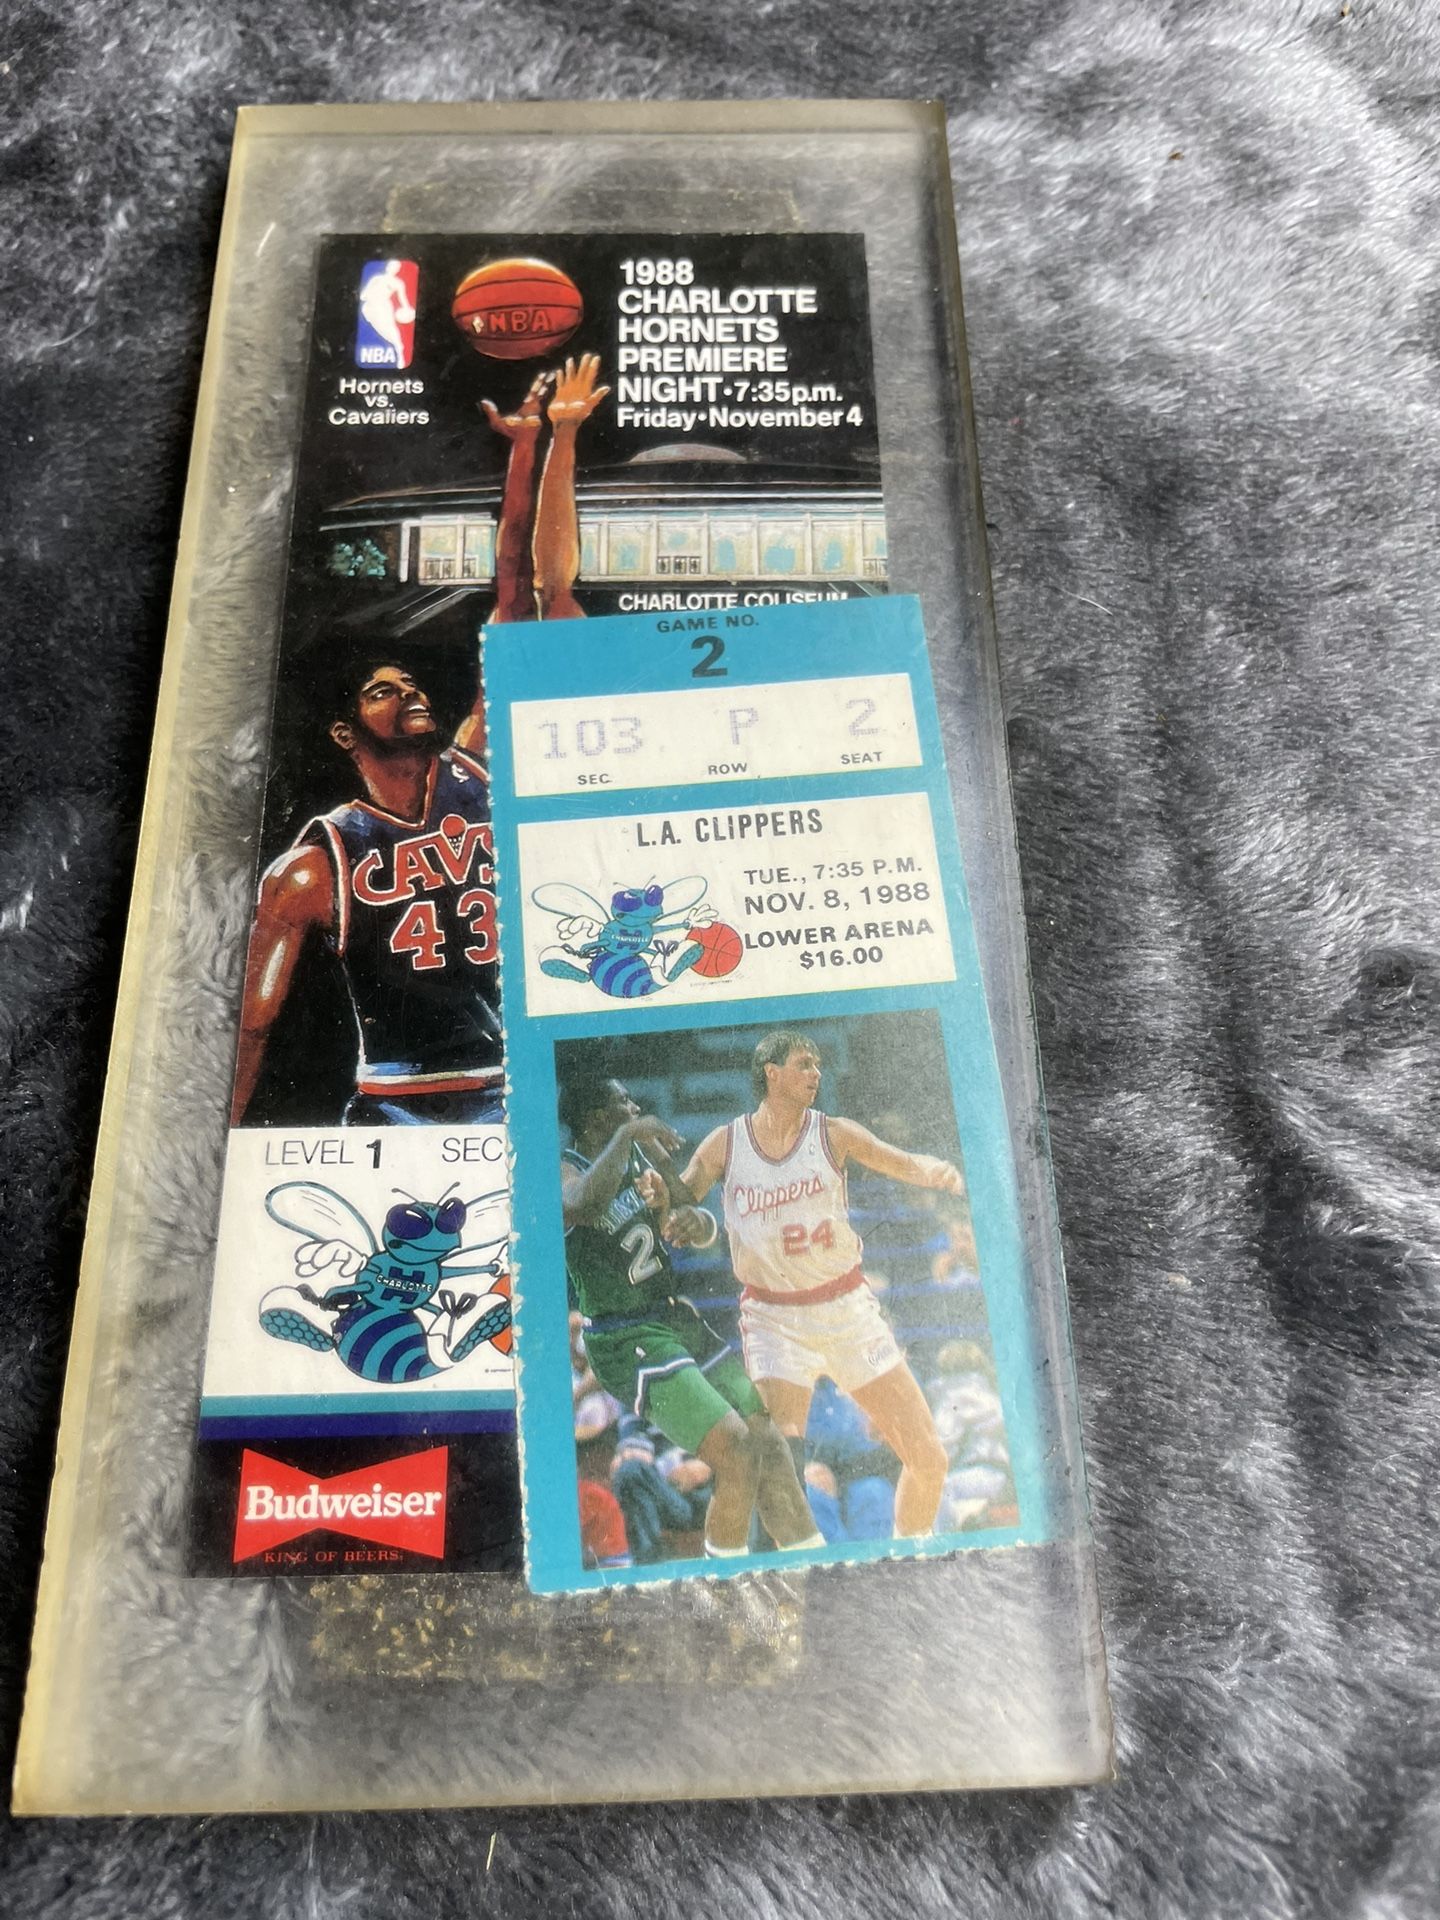 Vintage 1988 Charlotte Hornets Game Ticket